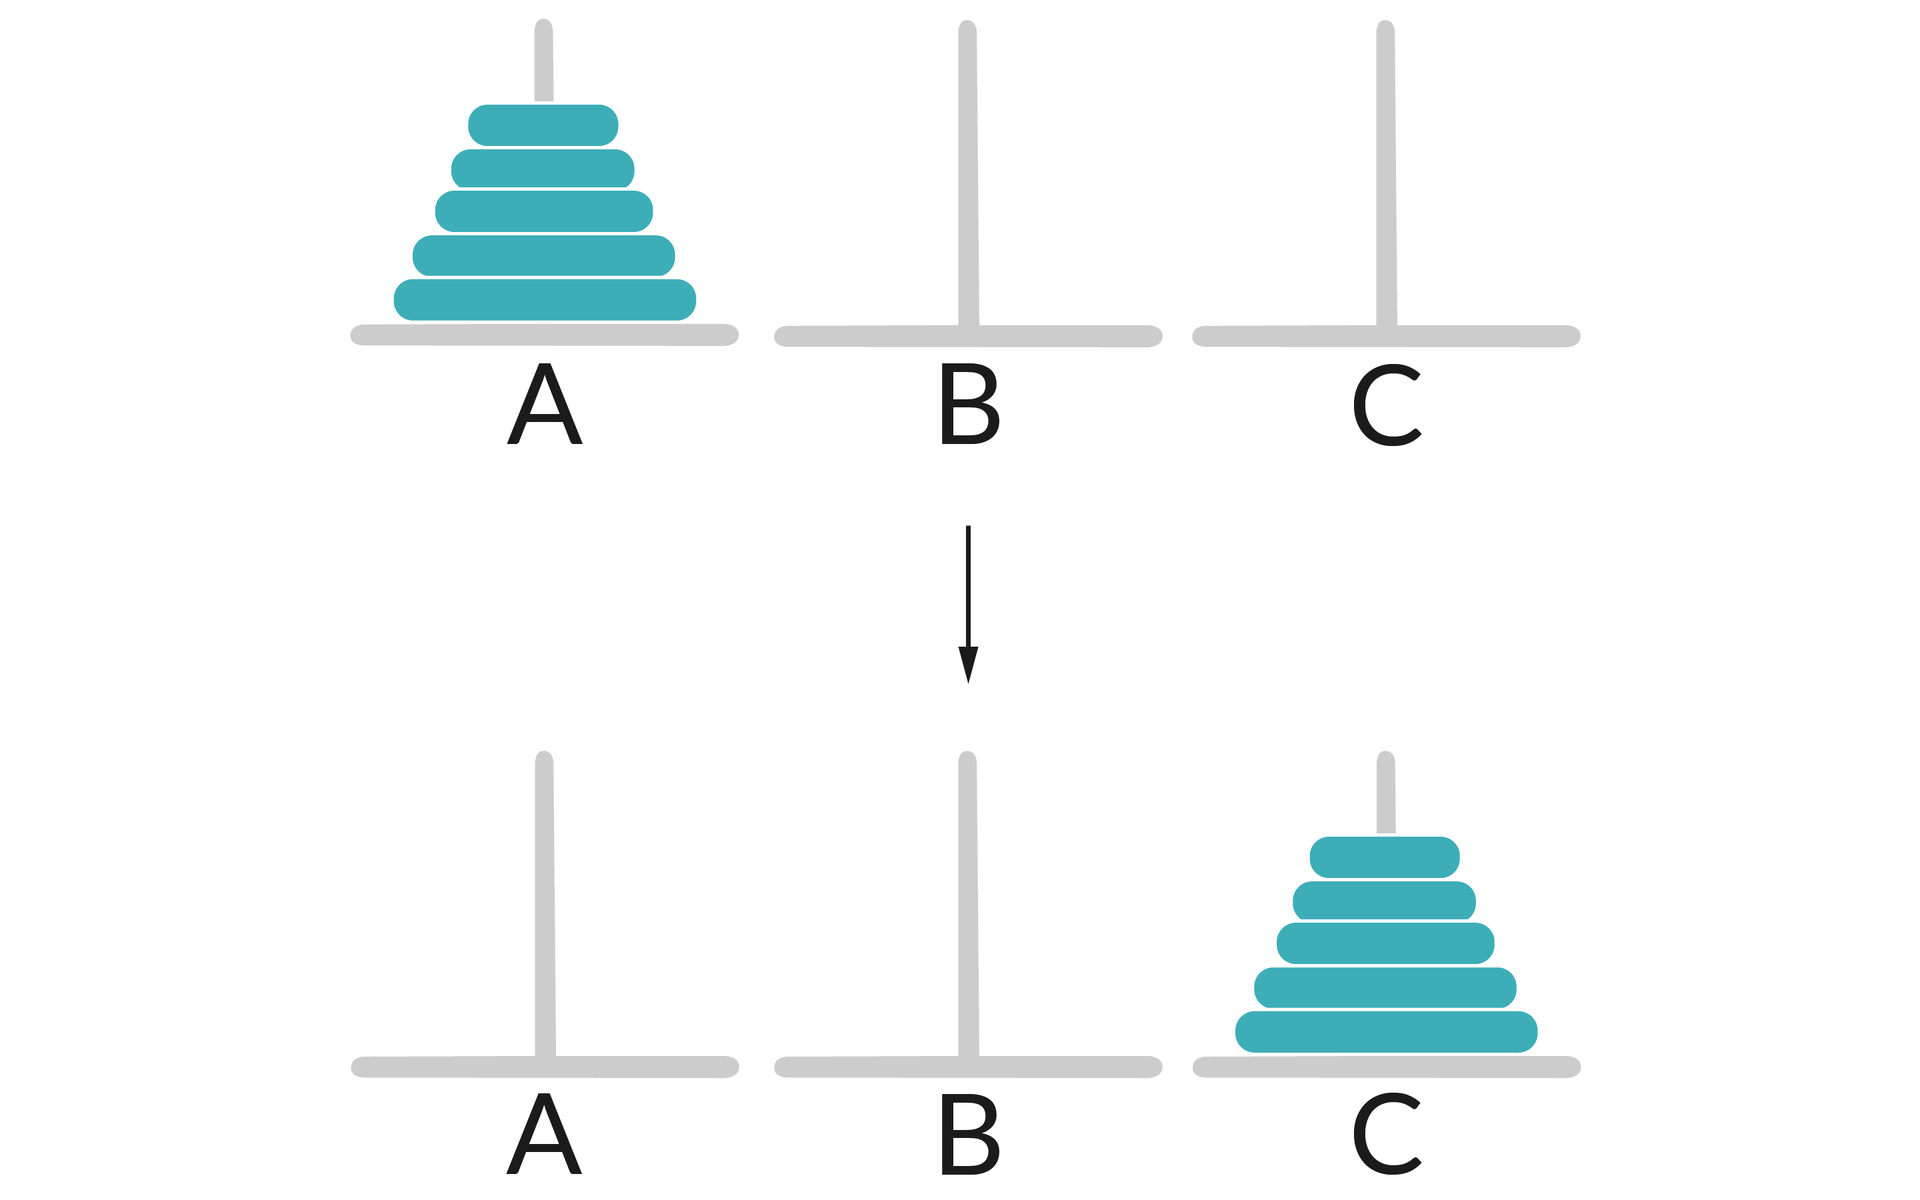 Ilustracja przedstawia dwa rzędy słupków: A, B, C. W pierwszym rzędzie na słupku A umieszczone jest 5 krążków w kolejności od największego do najmniejszego.  Słupki B oraz C są puste.  W drugim rzędzie słupków, na słupku C znajduje się 5 krążków ułożonych w kolejności od największego do najmniejszego.  Słupki A oraz B są puste.